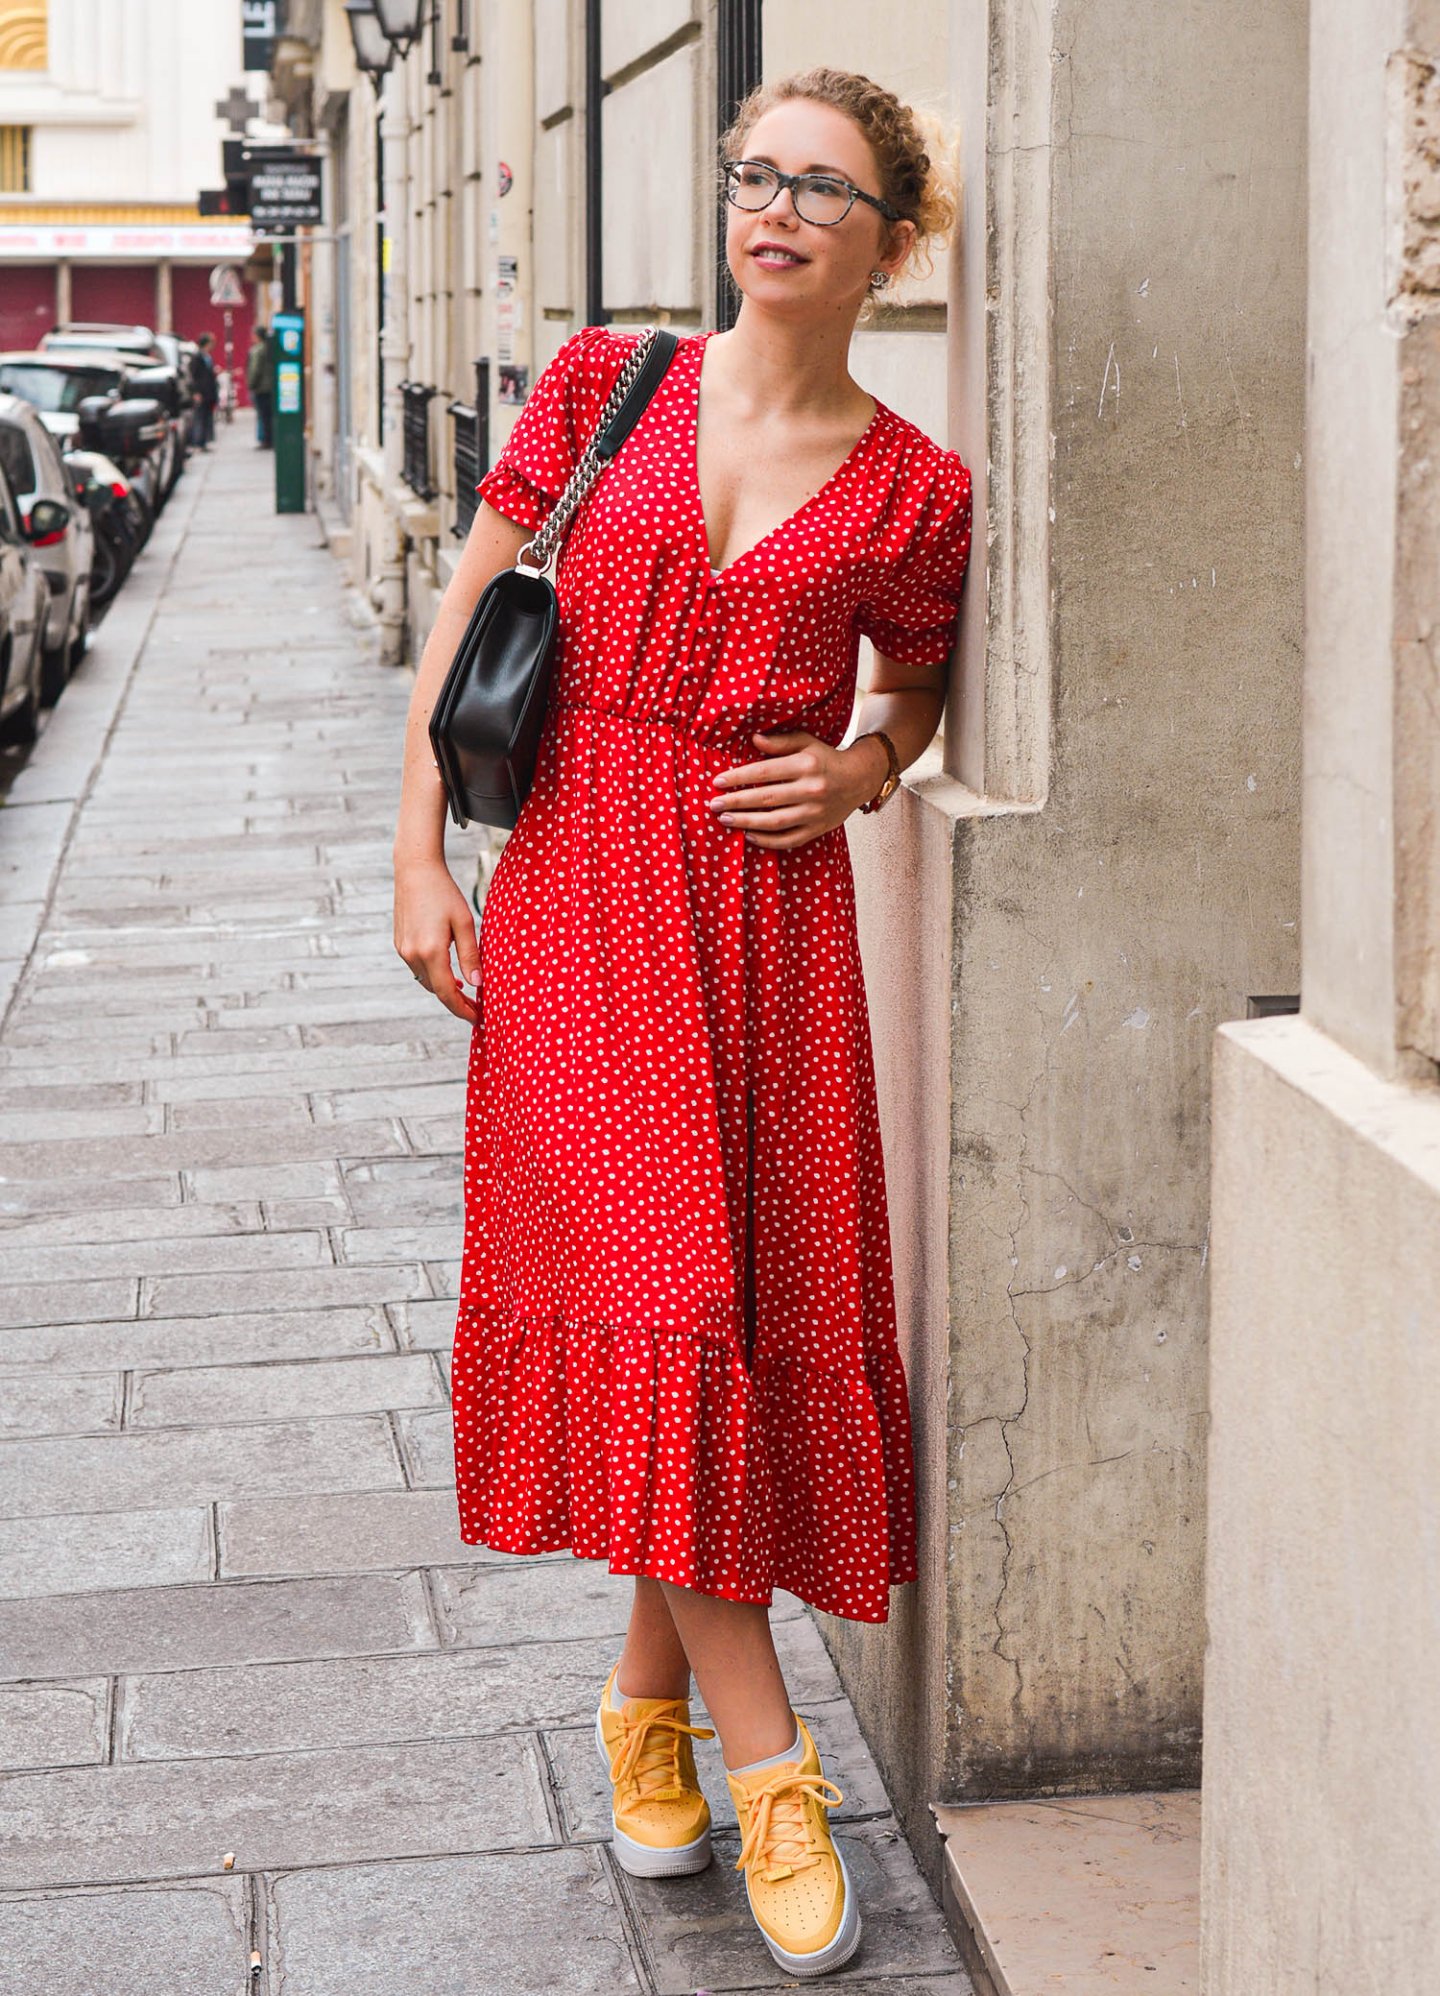 Pariser Straßen mit Sommerkleid, Chanel Handtasche und sneakern